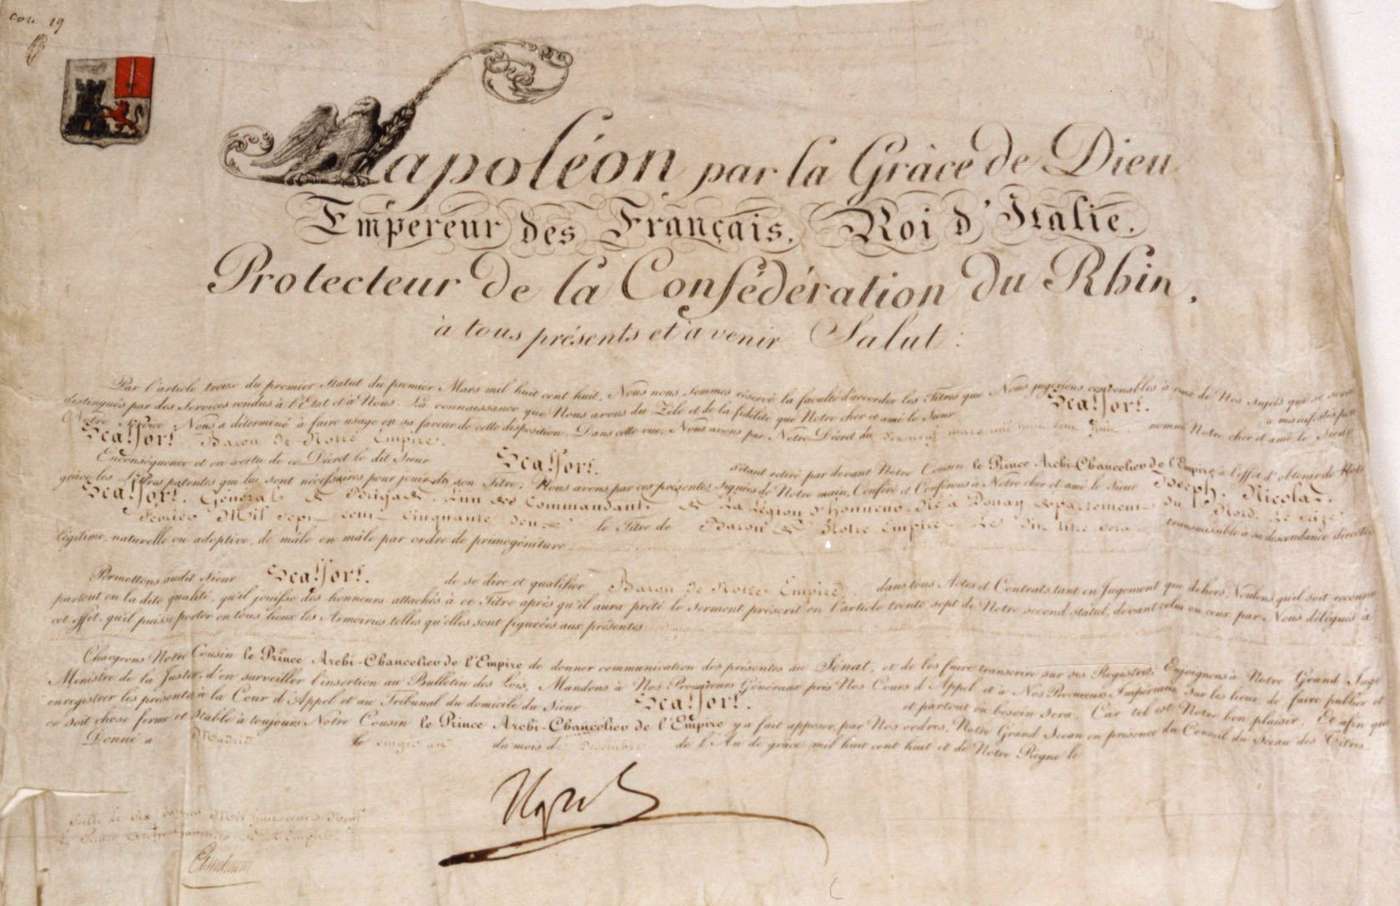 Lettres patentes scellées conférant le titre de baron au général Scalfort.